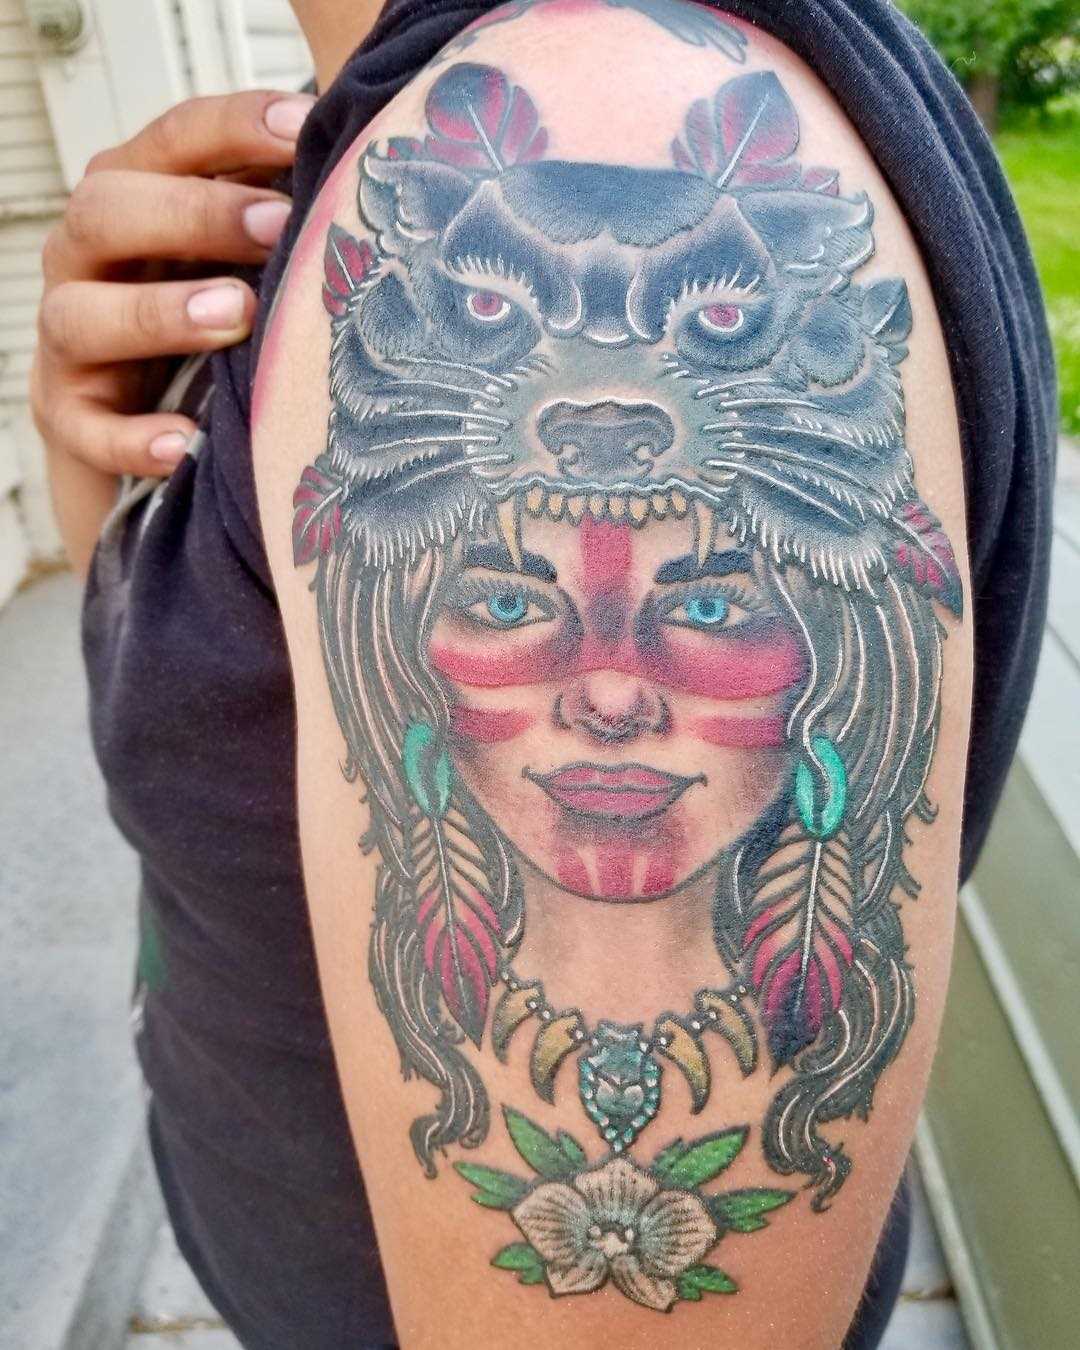 Tatuagem de uma menina indígena com o lobo no ombro da mulher